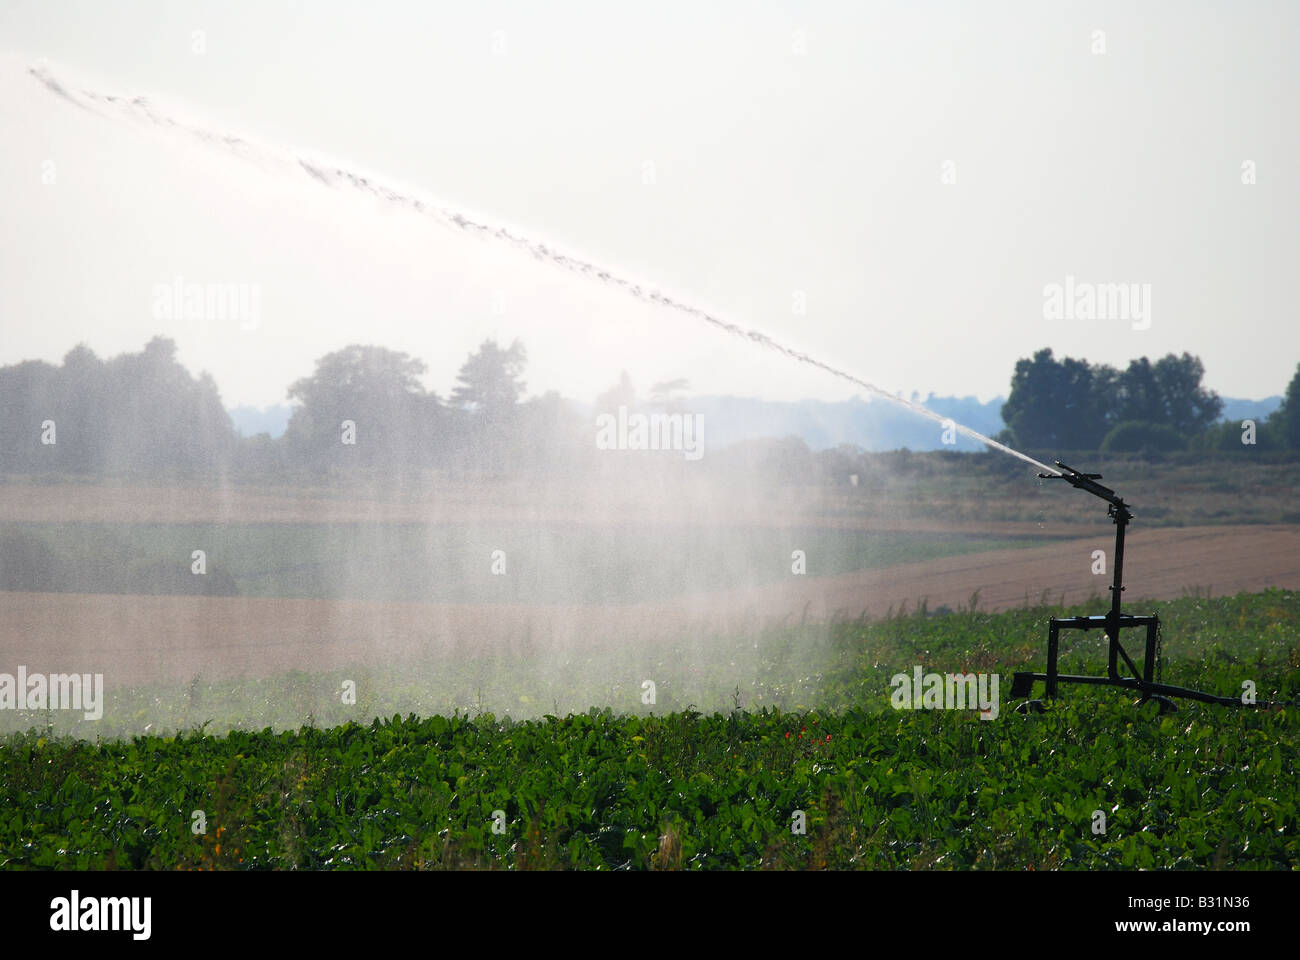 Acqua irrigua sprinkler nel campo, Mistley, Tendring District, Essex, Inghilterra, Regno Unito Foto Stock